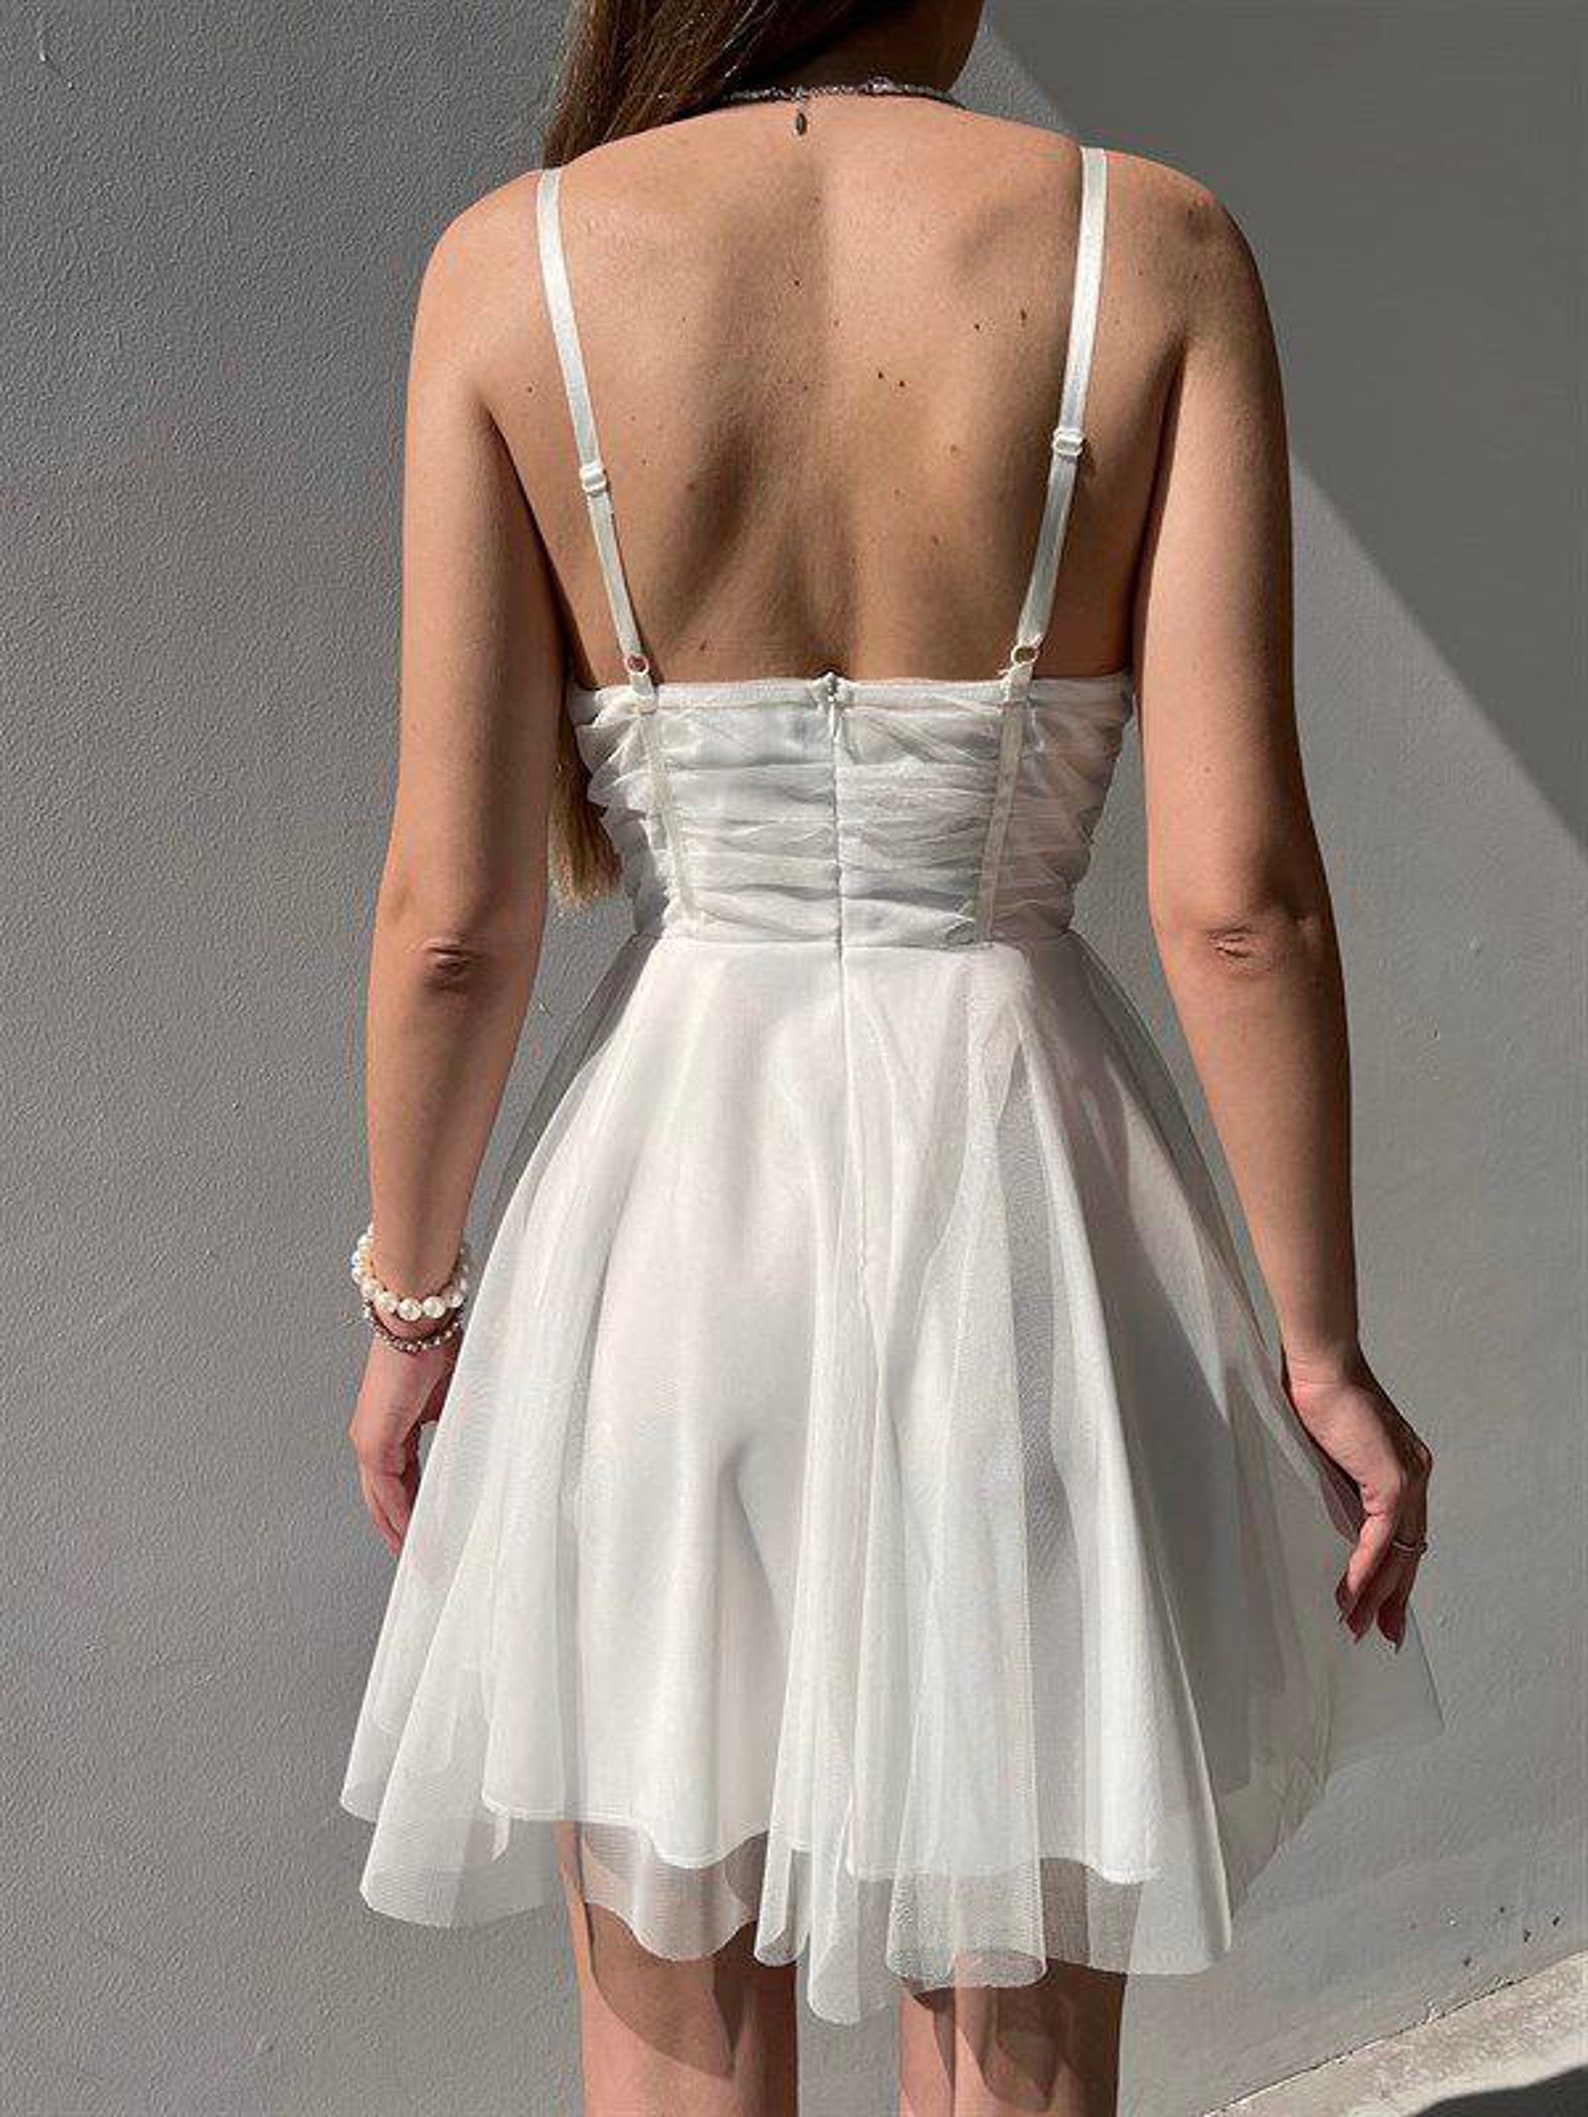 Short White Tulle Dress Bridal Shower Dress Bachelorette - Etsy